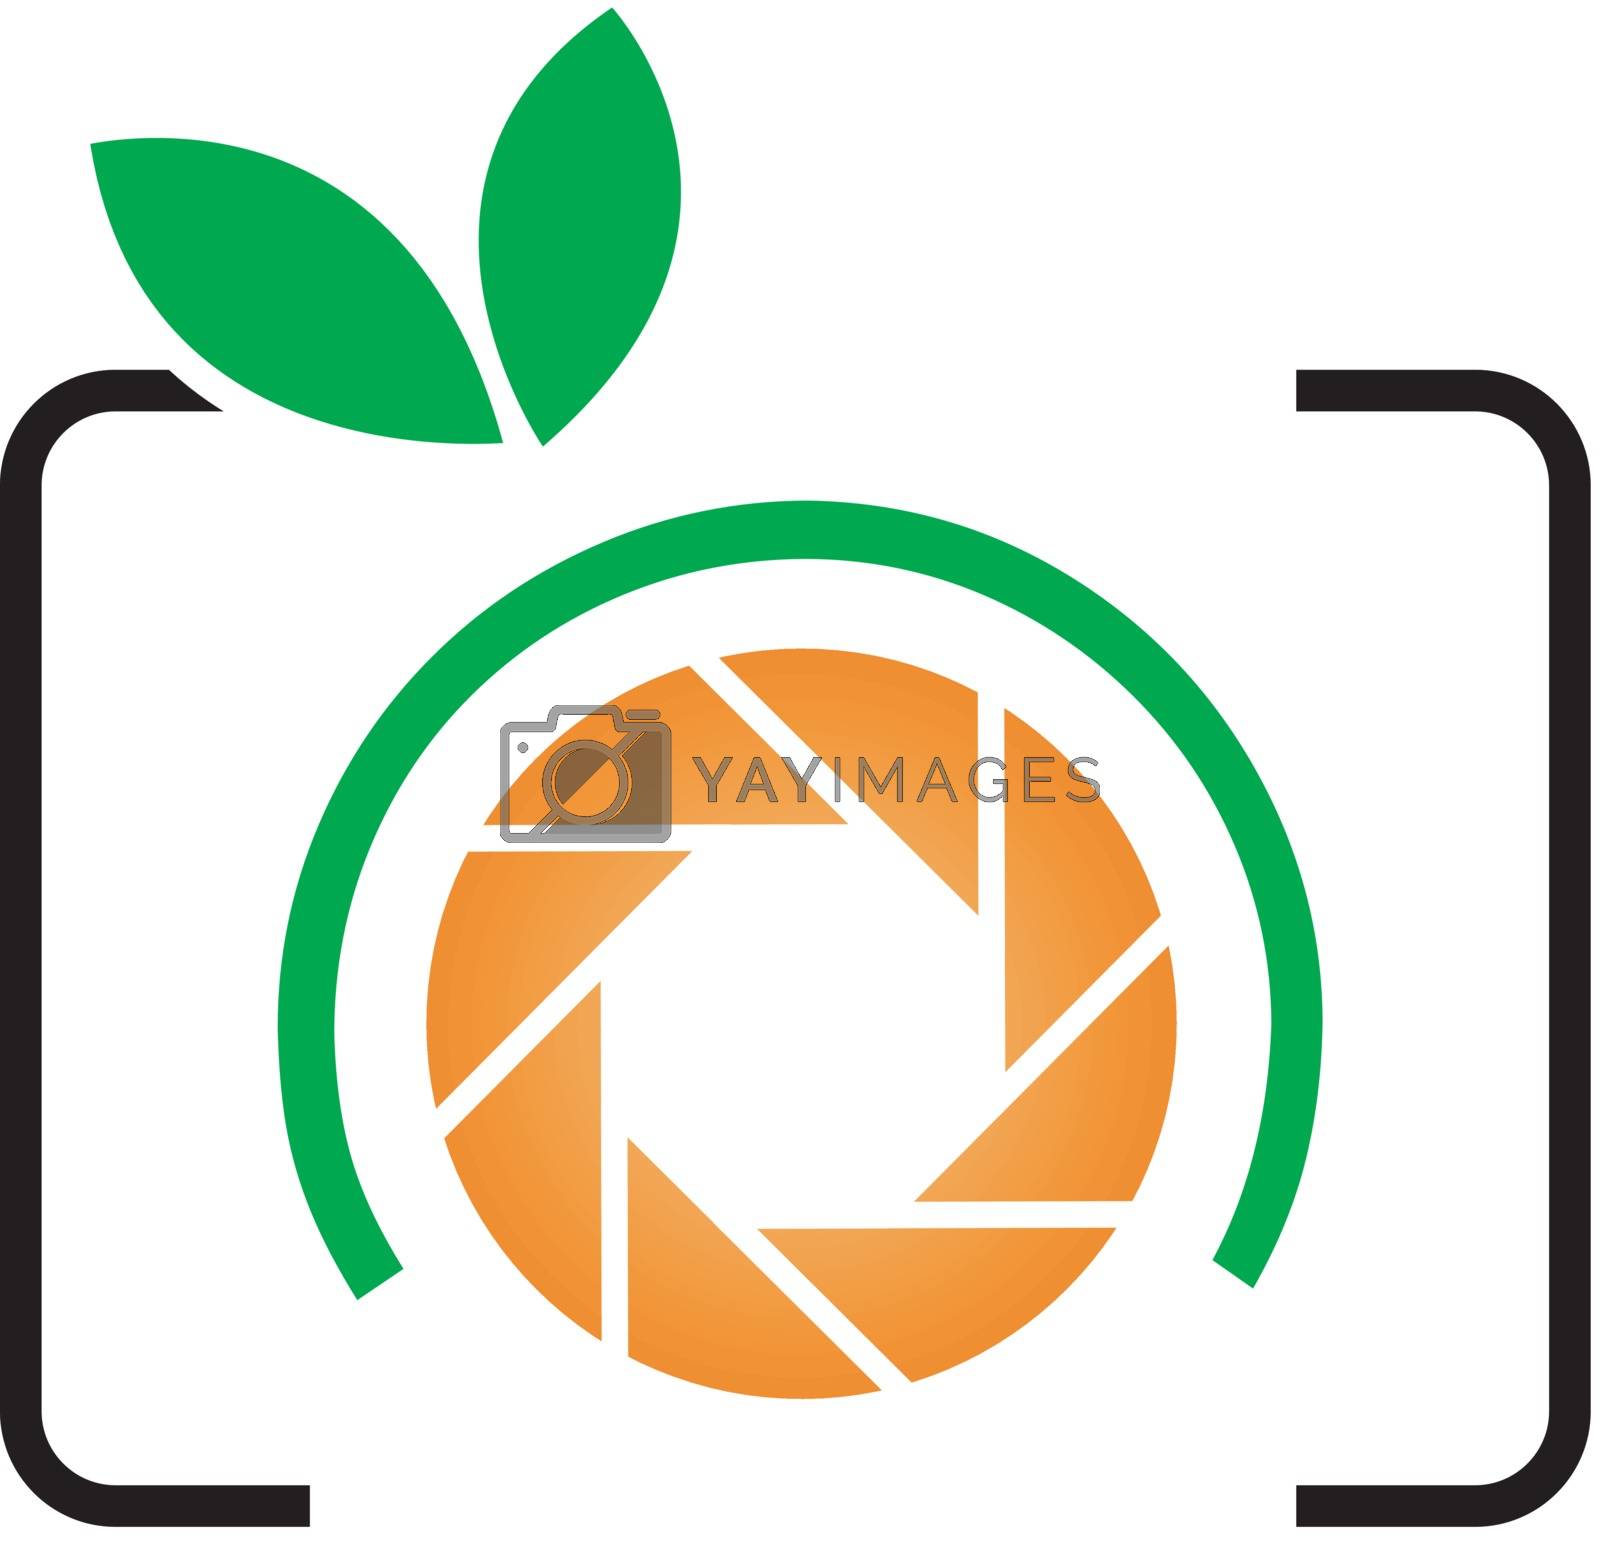 Royalty free image of Photography logo by shawlinmohd